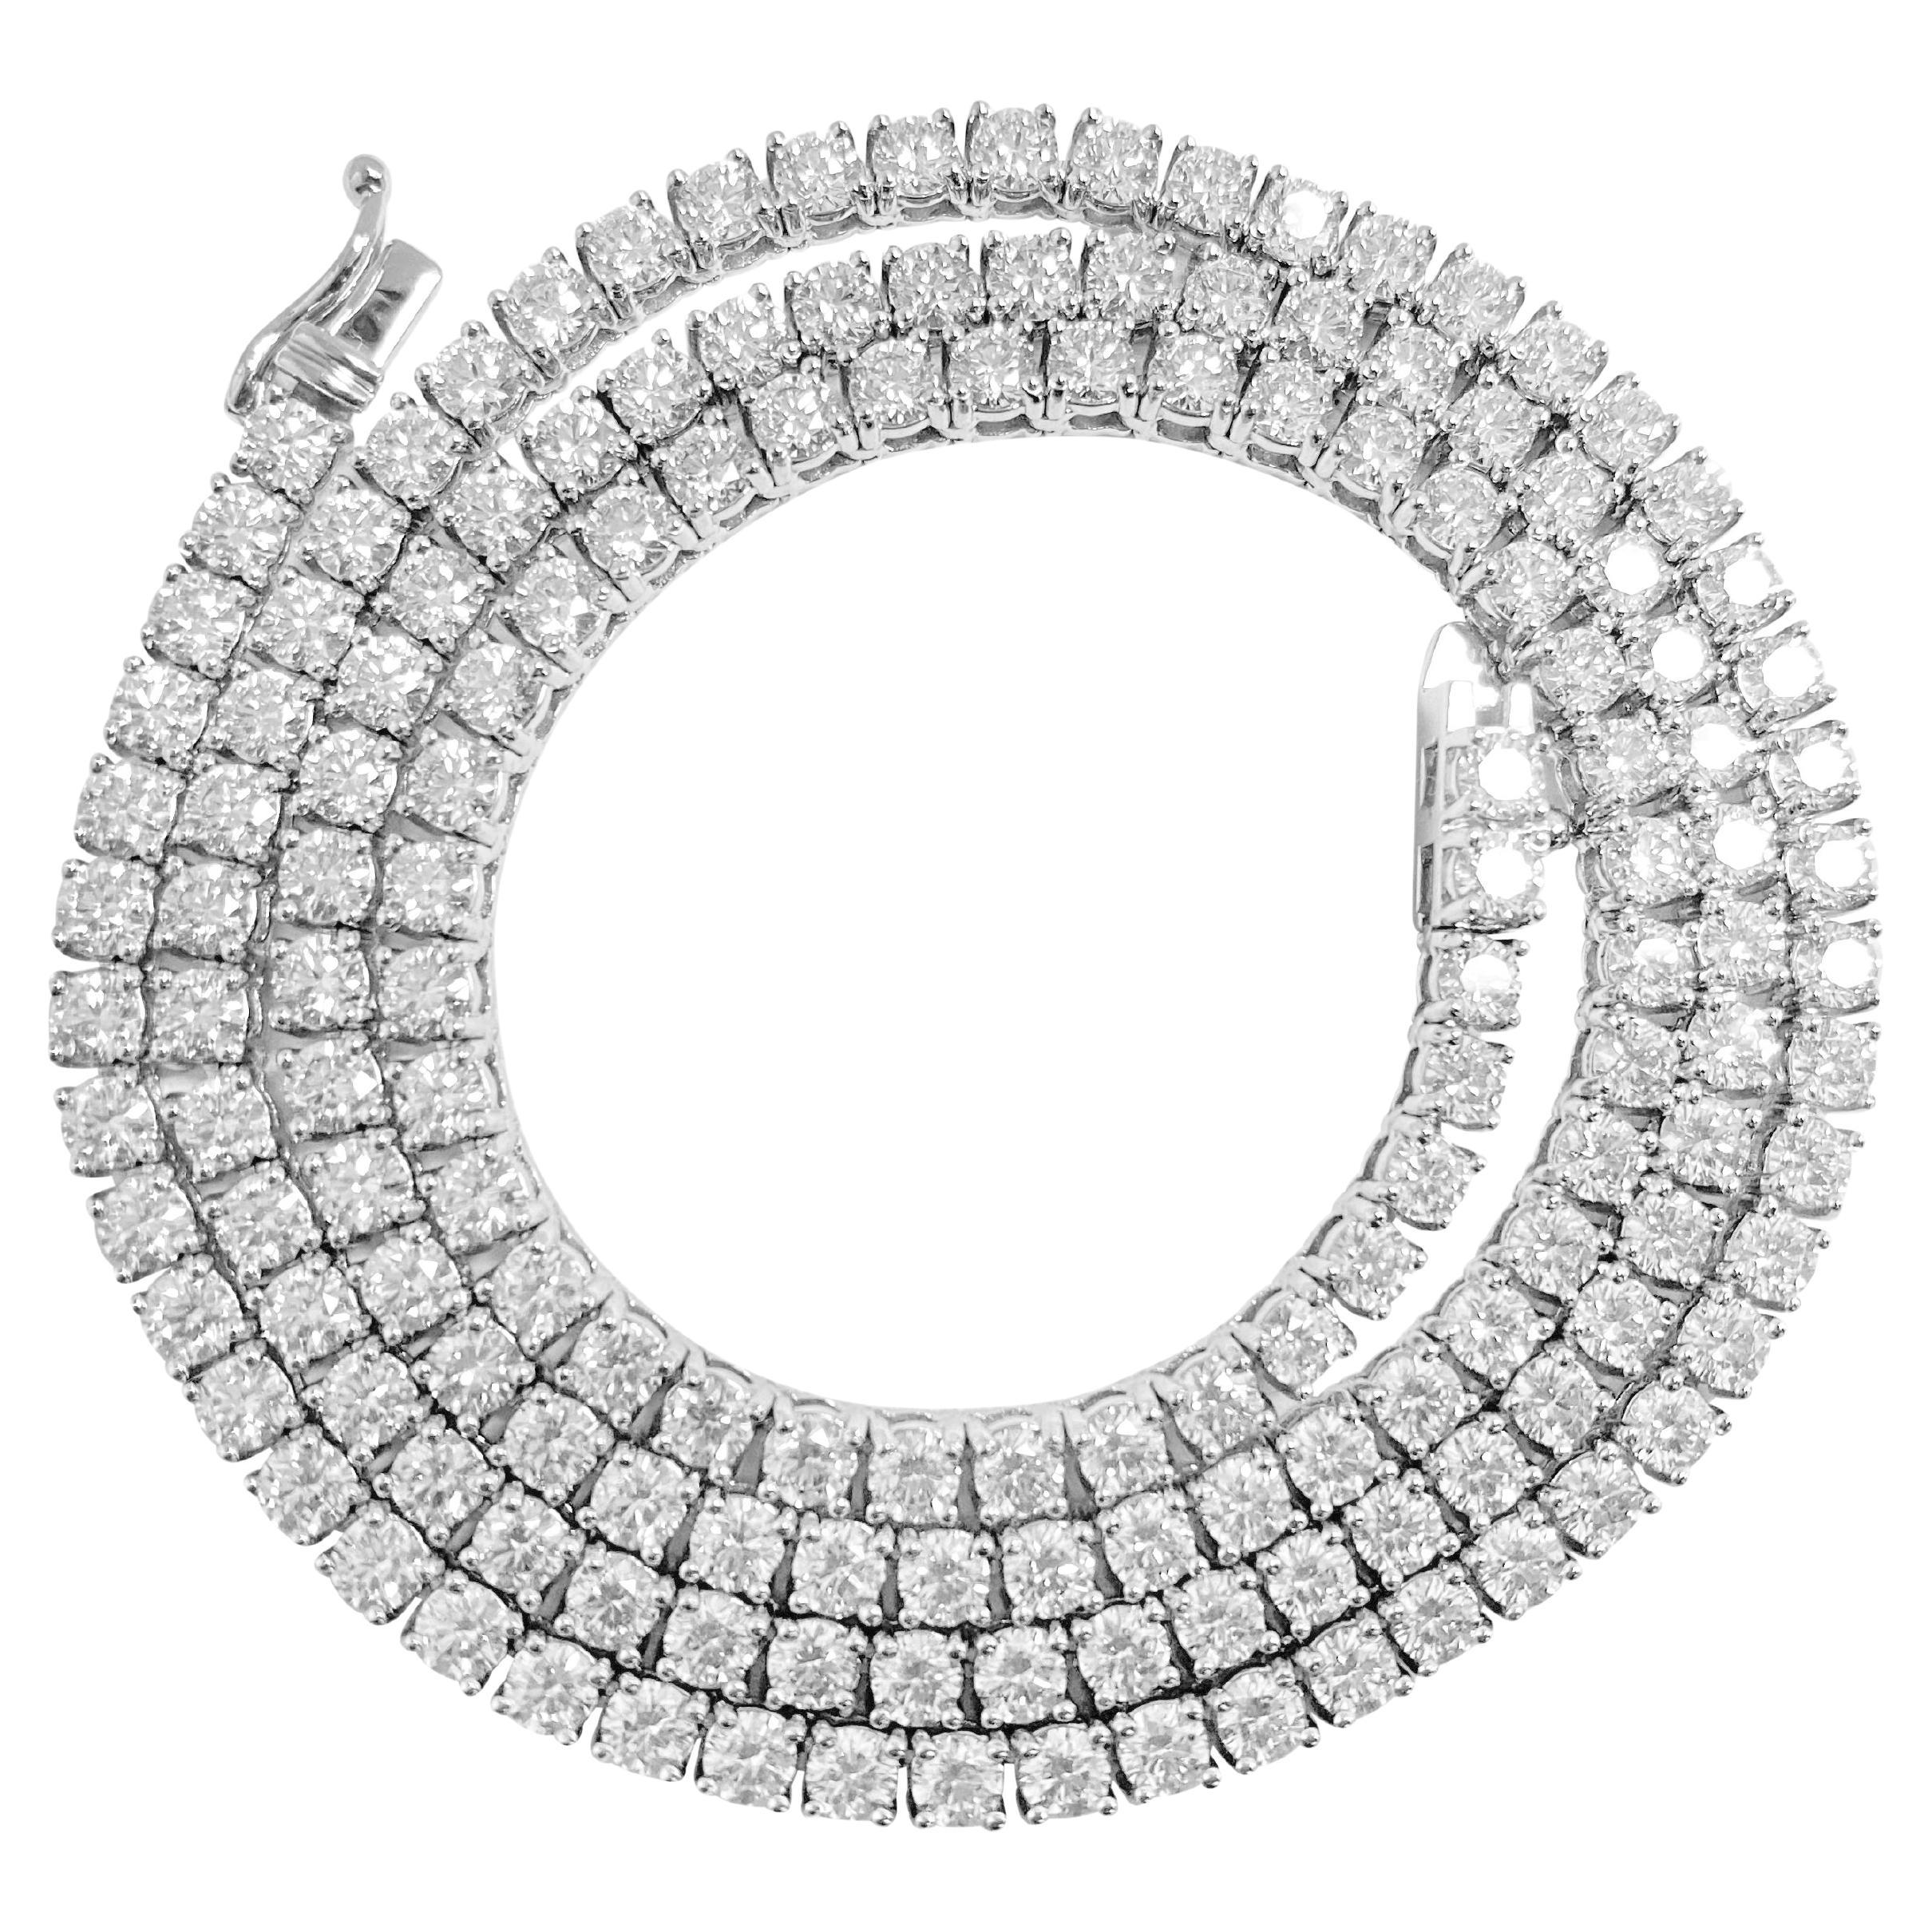 16ct VVS Diamond Tennis Necklace For Sale